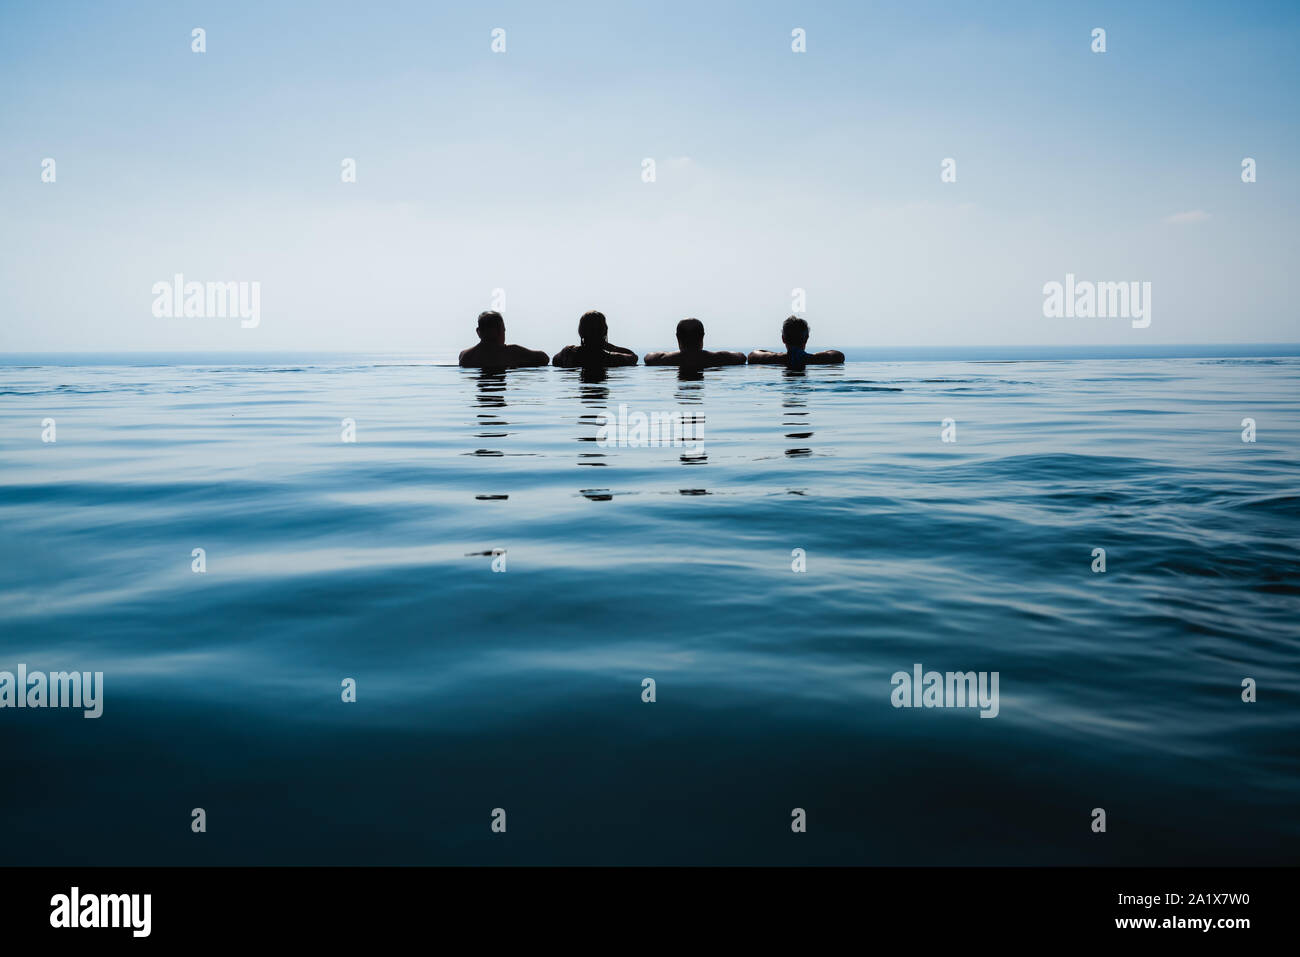 Amici nuoto in piscina contro blu con vista sul mare Foto Stock